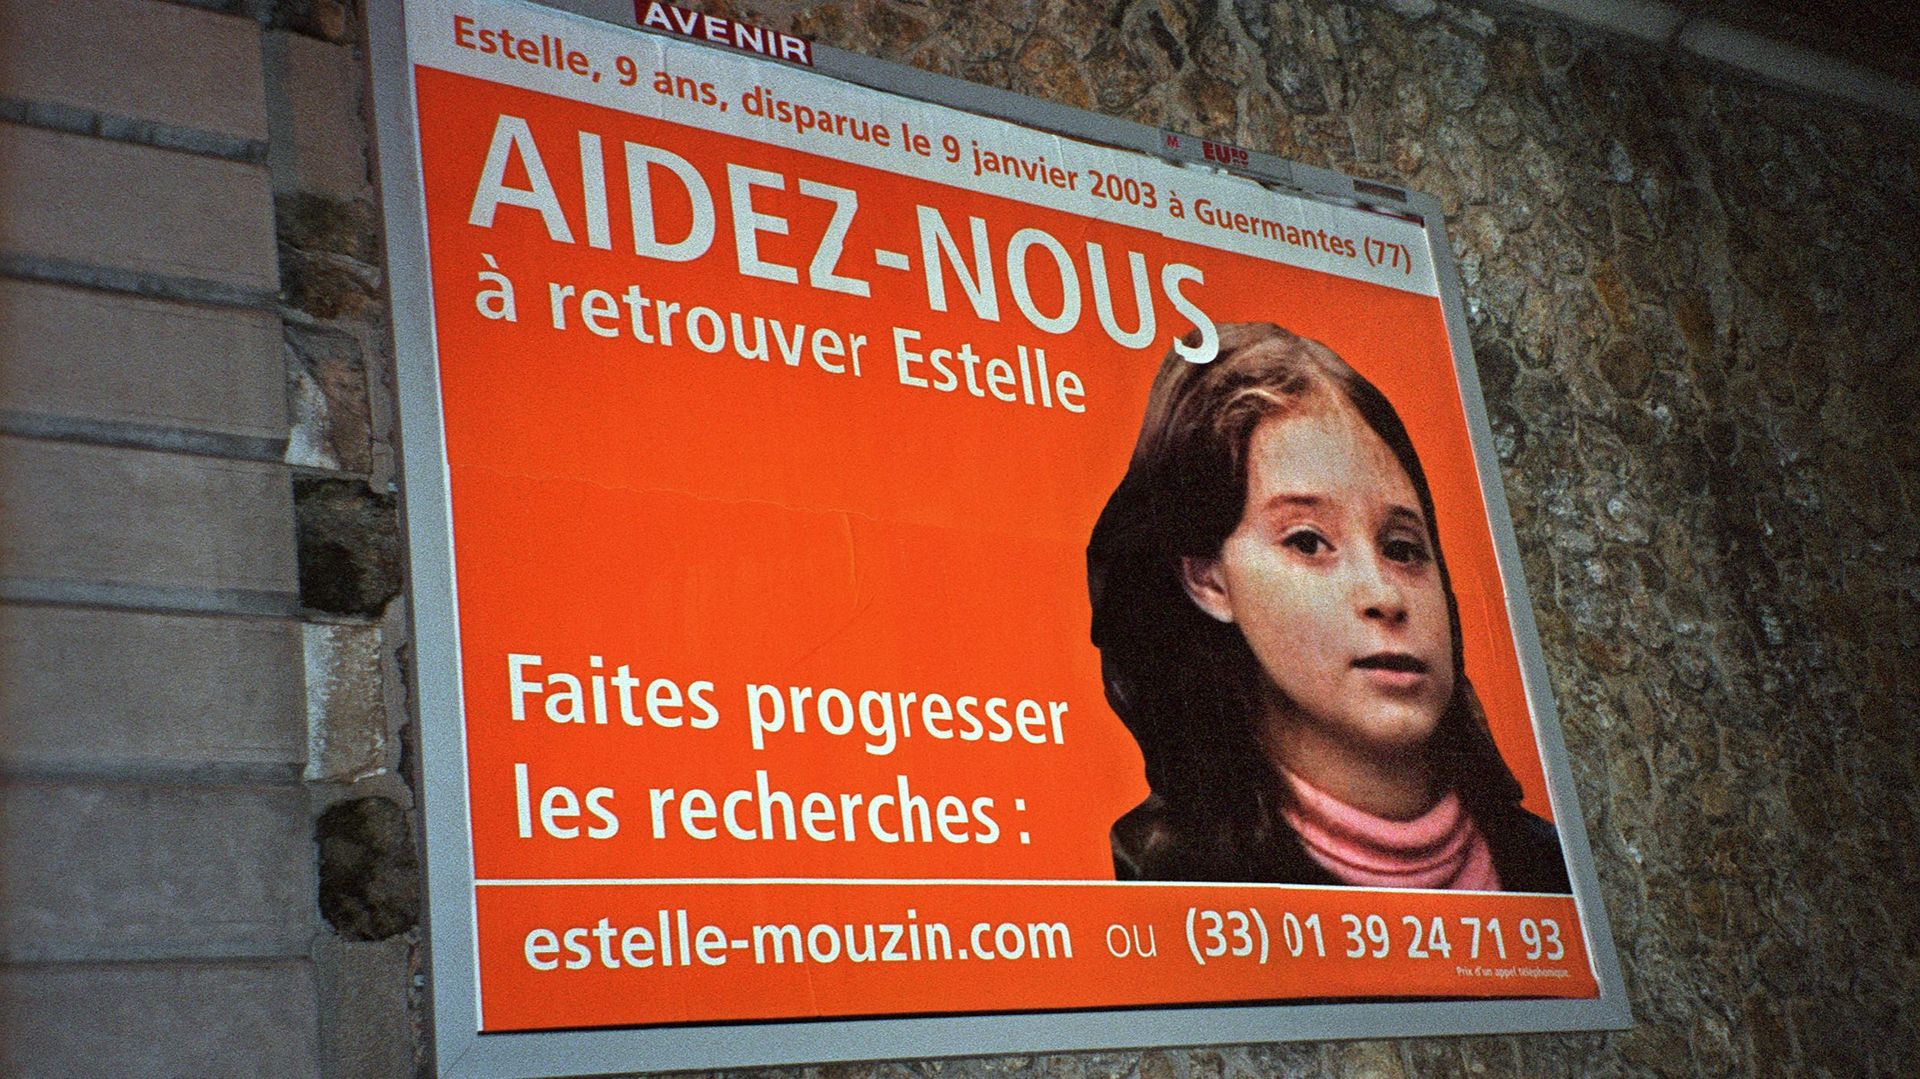 Disparue en 2003, Estelle Mouzin, 9 ans, n'a jamais été retrouvée. Michel Fourniret a avoué l'avoir enlevée. 